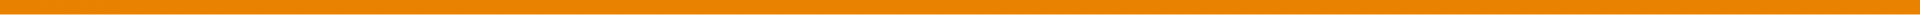 Orange Divider Text